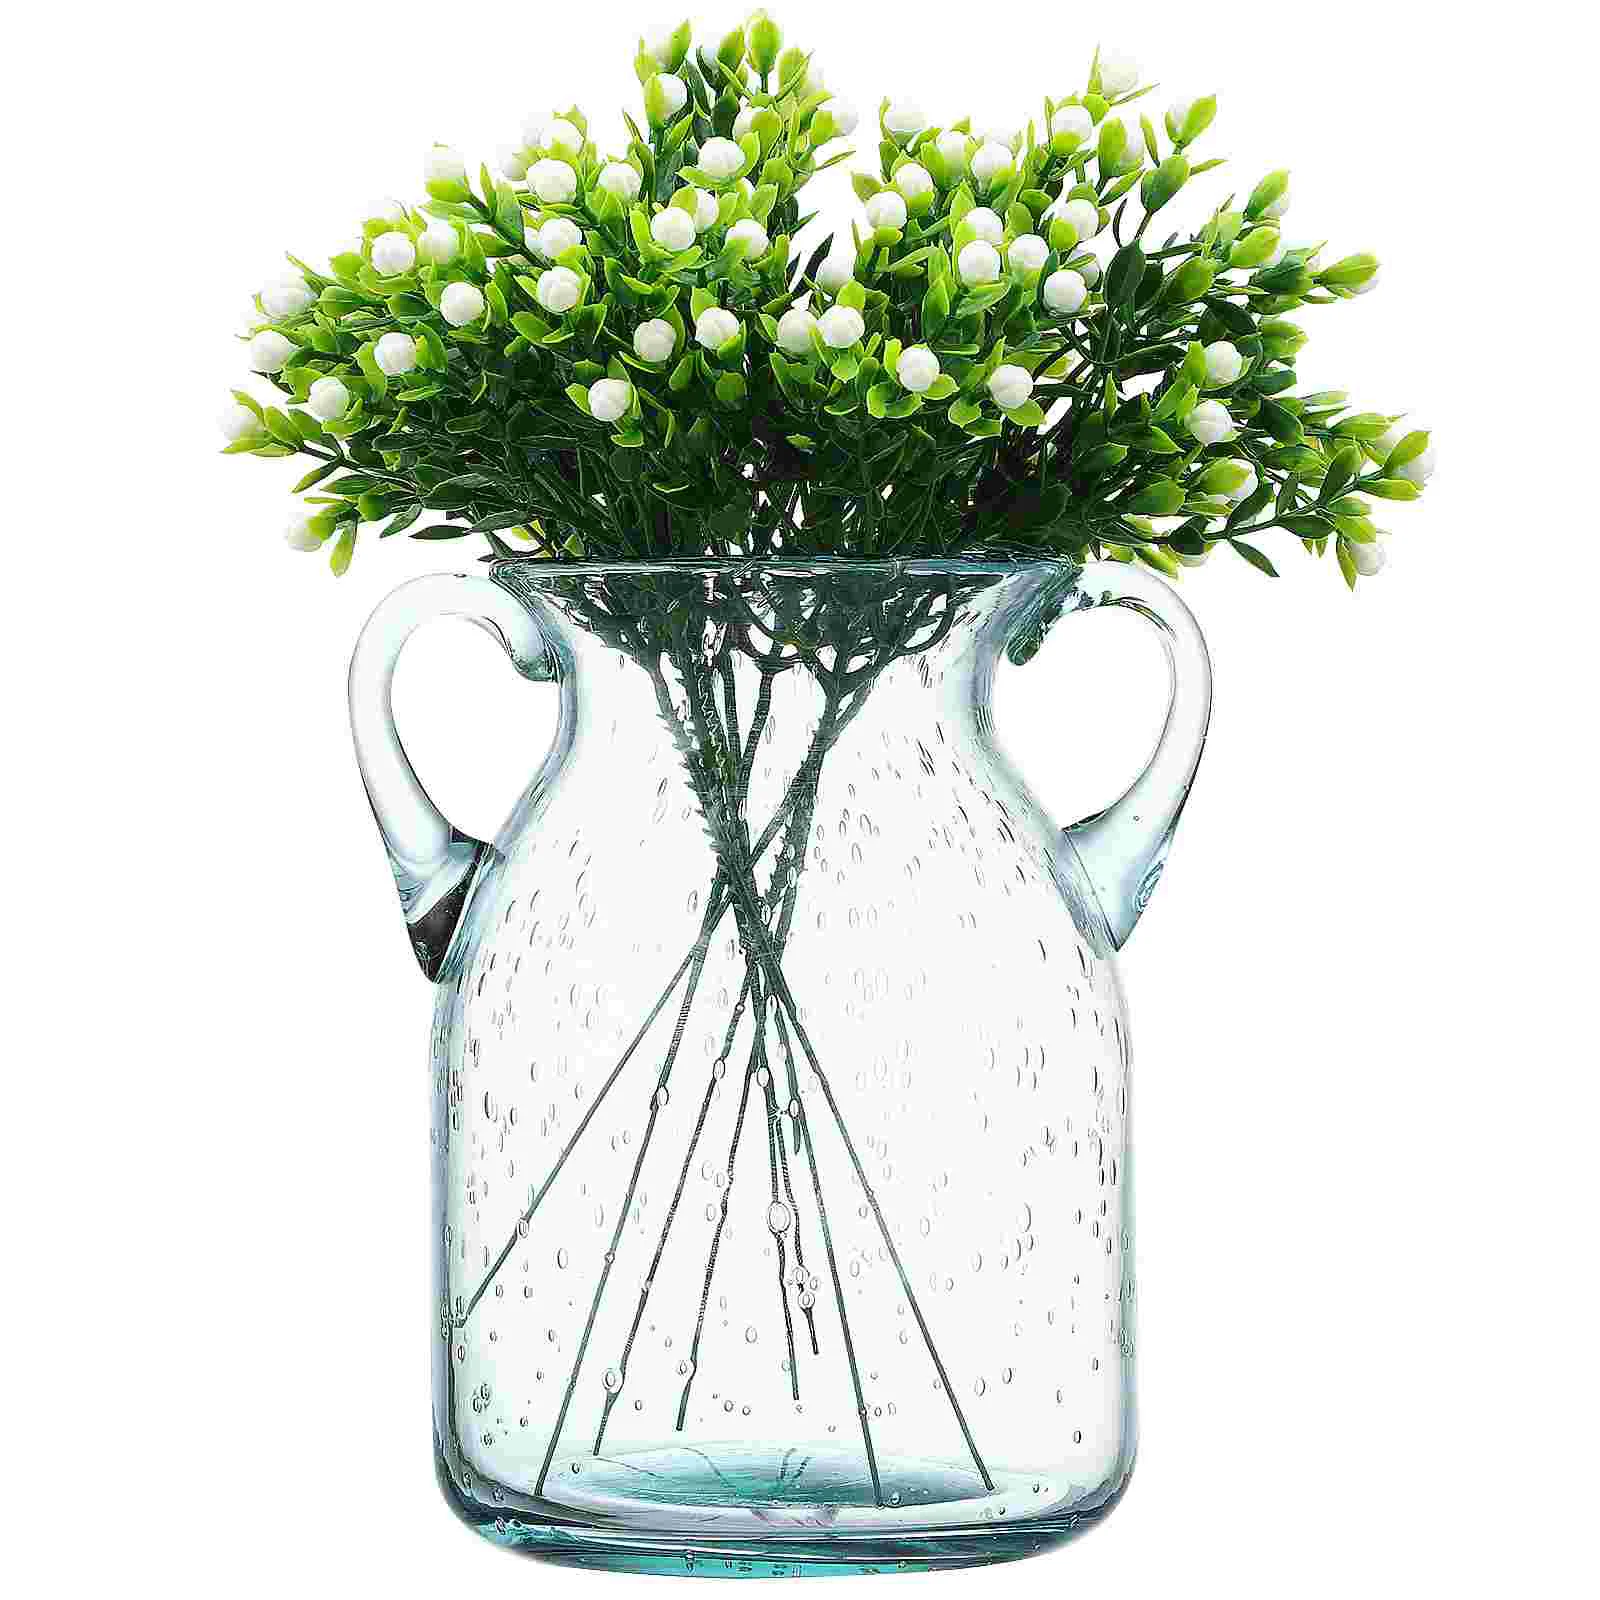 

Ваза для домашнего декора Декоративные декоративные вазы для маленьких цветов, прозрачные центральные части из стекла